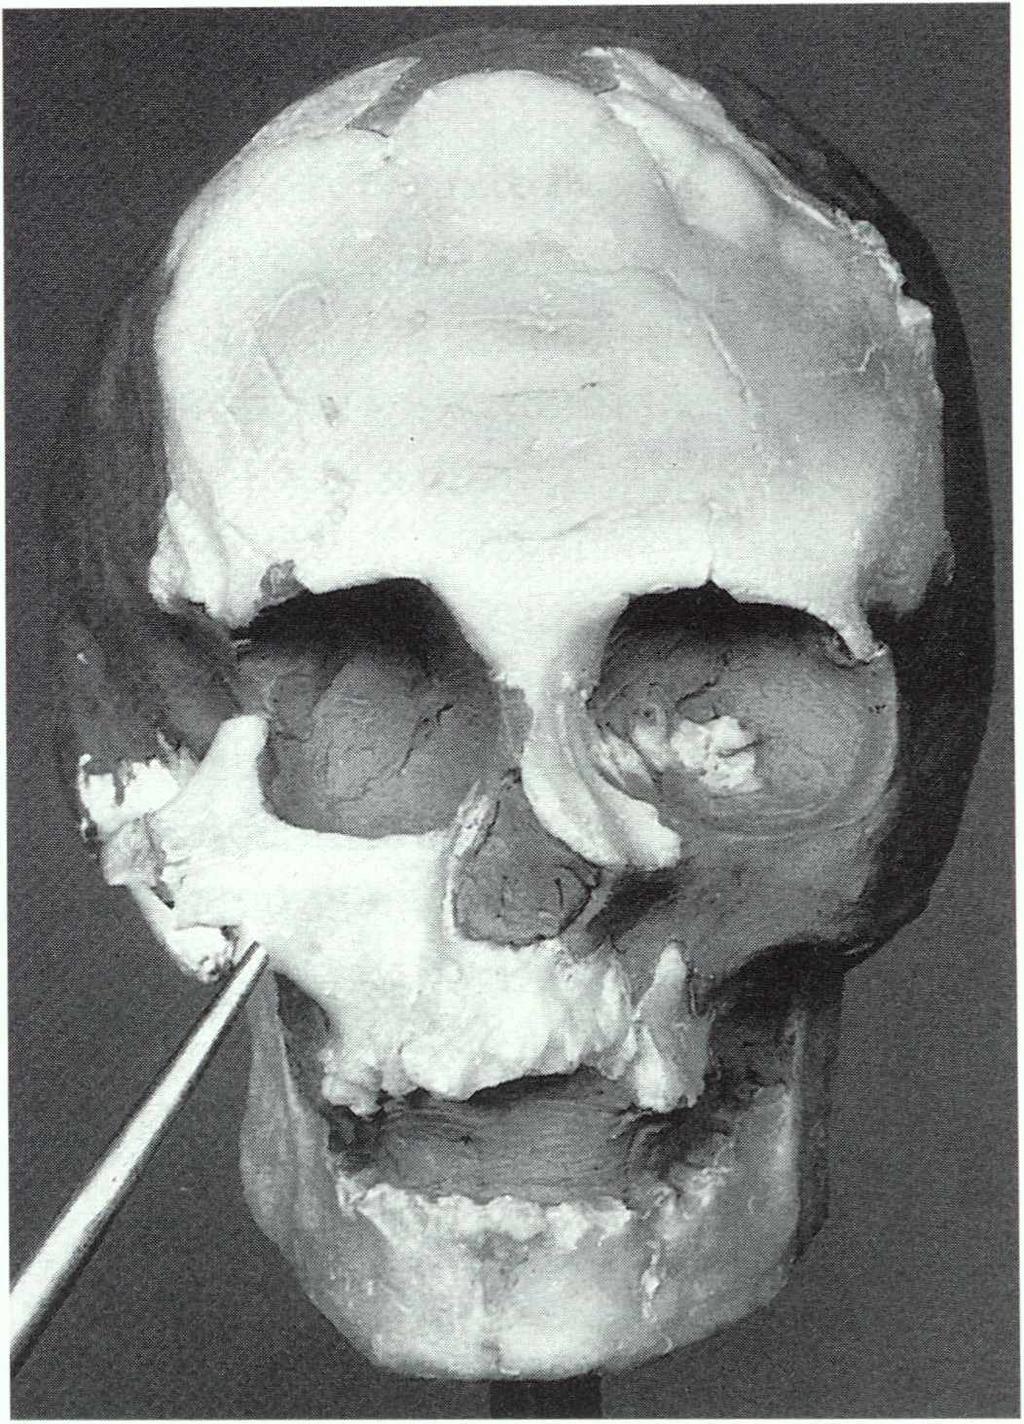 Abb. 2 Modell des Schädels aus dem Grab II In Vergina mit Stiftchen zur Markierung der Ergänzung von Mus kulatur und Haut keine perfekte Rekonstruktion eines Gesichts mög lich; die Erfahrungen aus